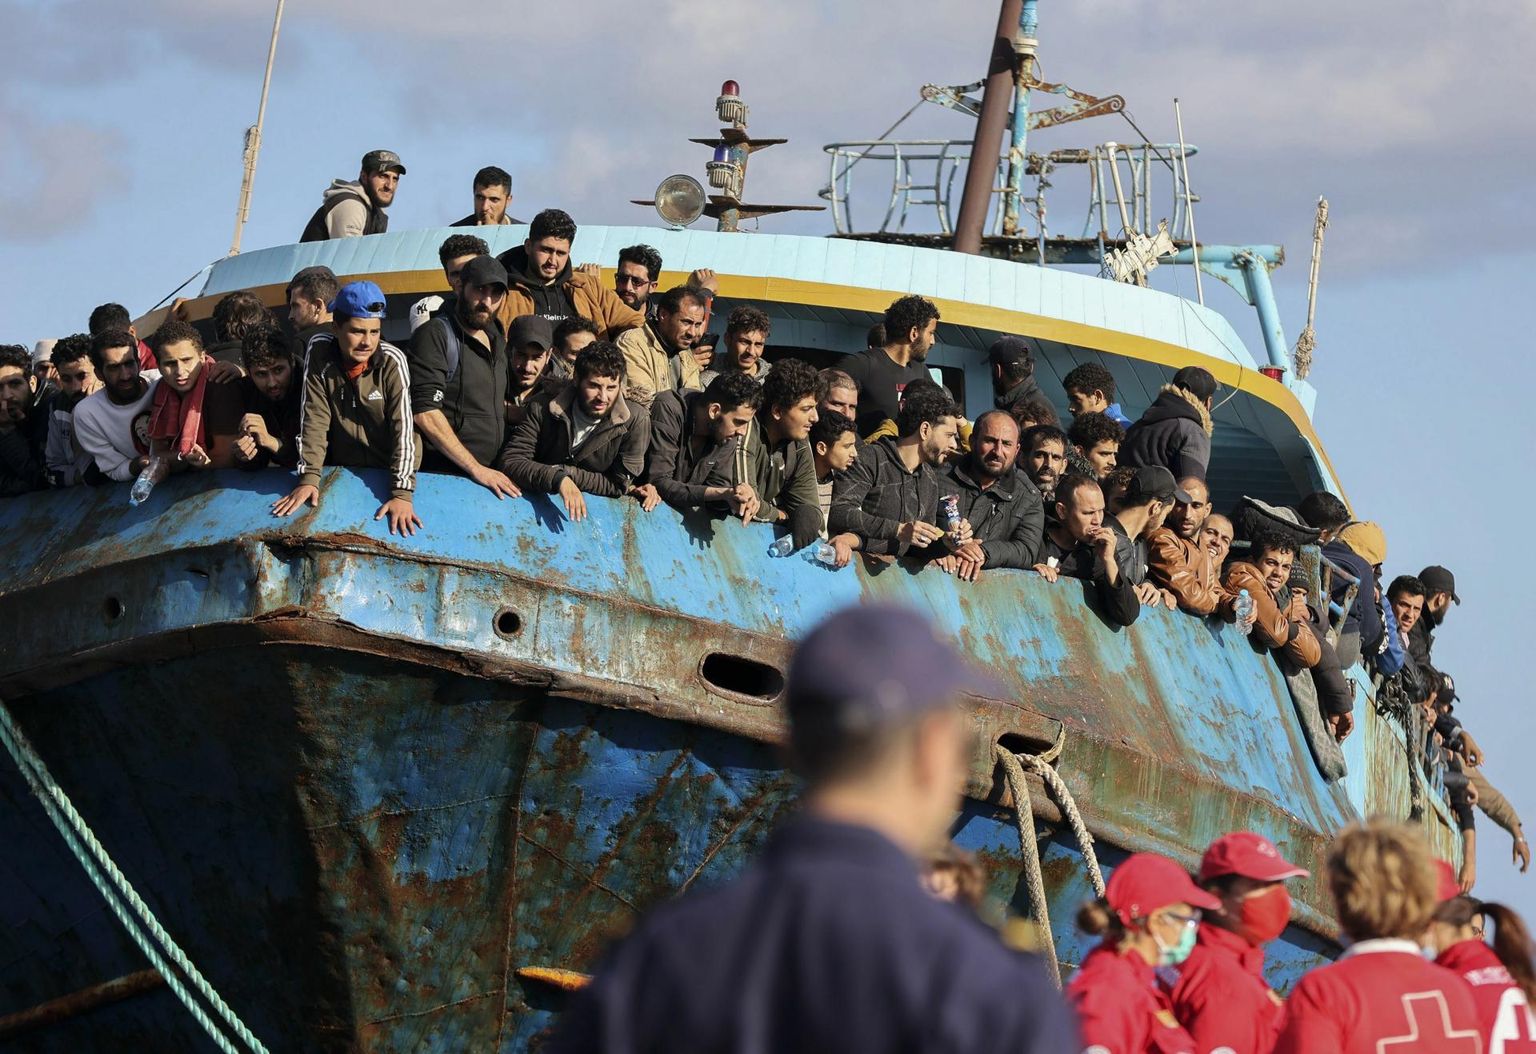 Kreeka võimud pukseerisid üleeile Kreeta saarele Palaiochora sadamasse sadu migrante vedanud kalalaeva, mis kaotas Vahemerele juhitavuse ja jäi hulpima. Kuna Egeuse merel on Kreeka piirivalve ja Frontex kontrolli tugevdanud, on hakanud laevad rohkem liikuma Kreetast lõunasse jäävaid mereteid pidi Itaalia suunas.